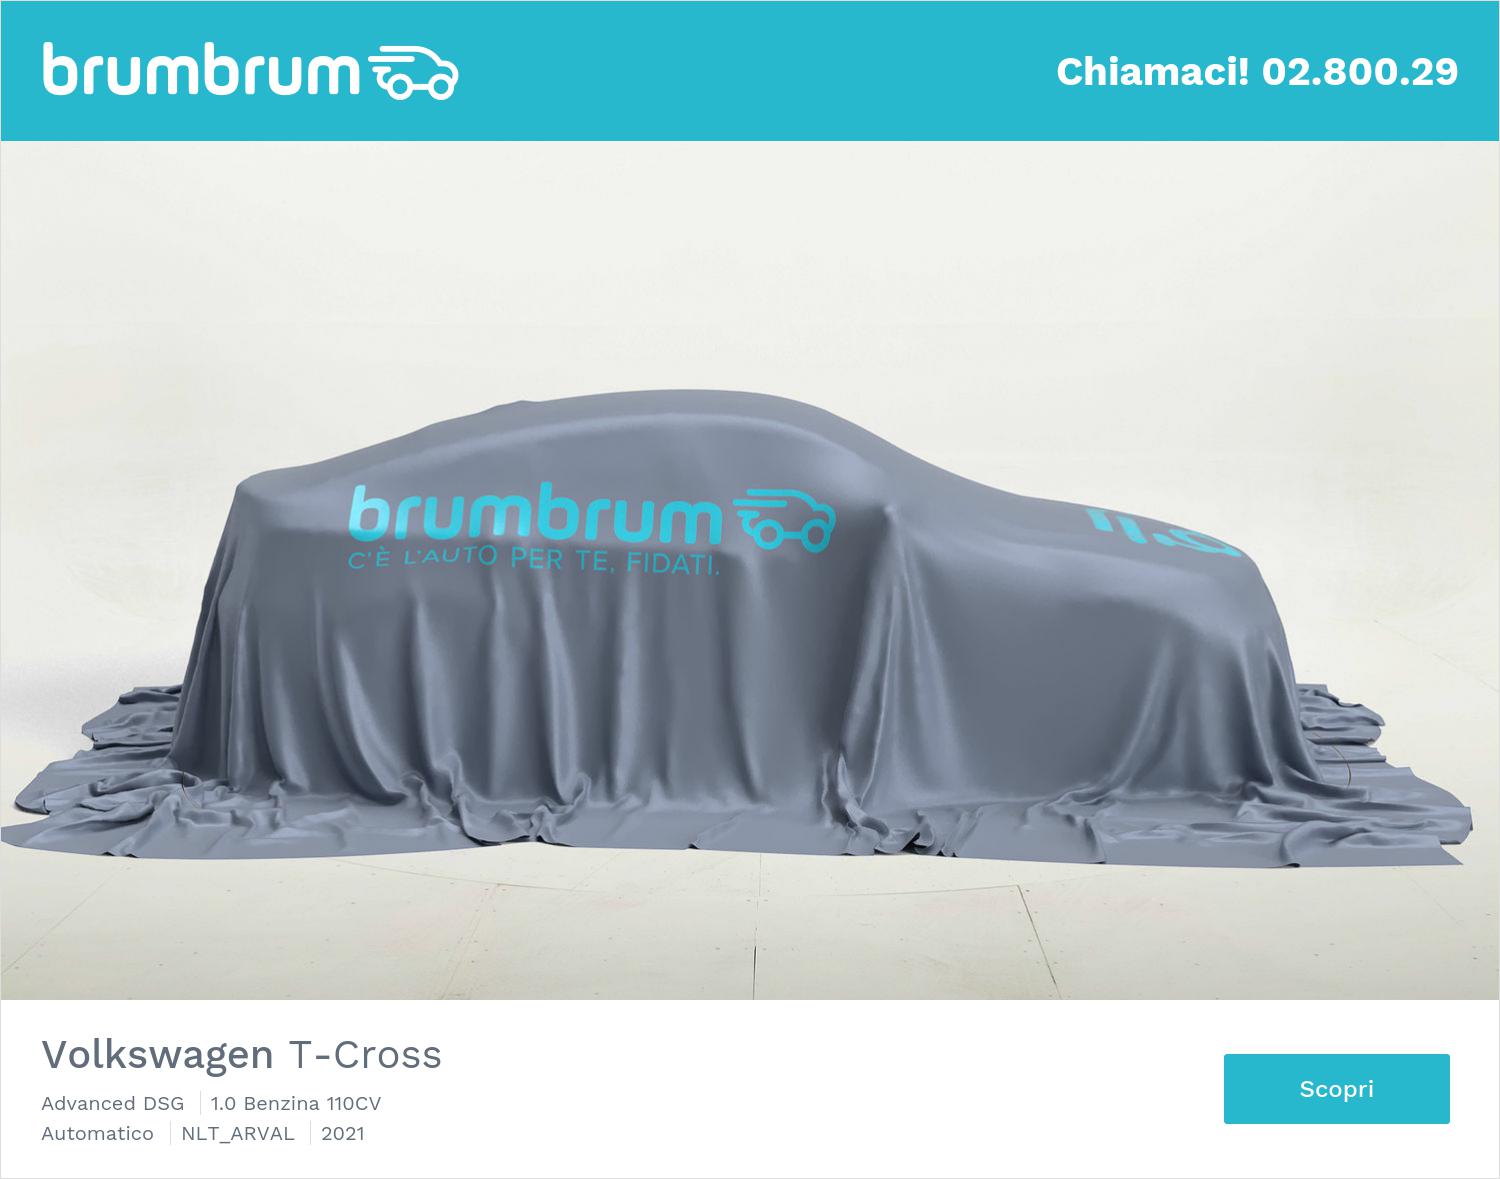 Noleggio lungo termine Volkswagen T-Cross | brumbrum